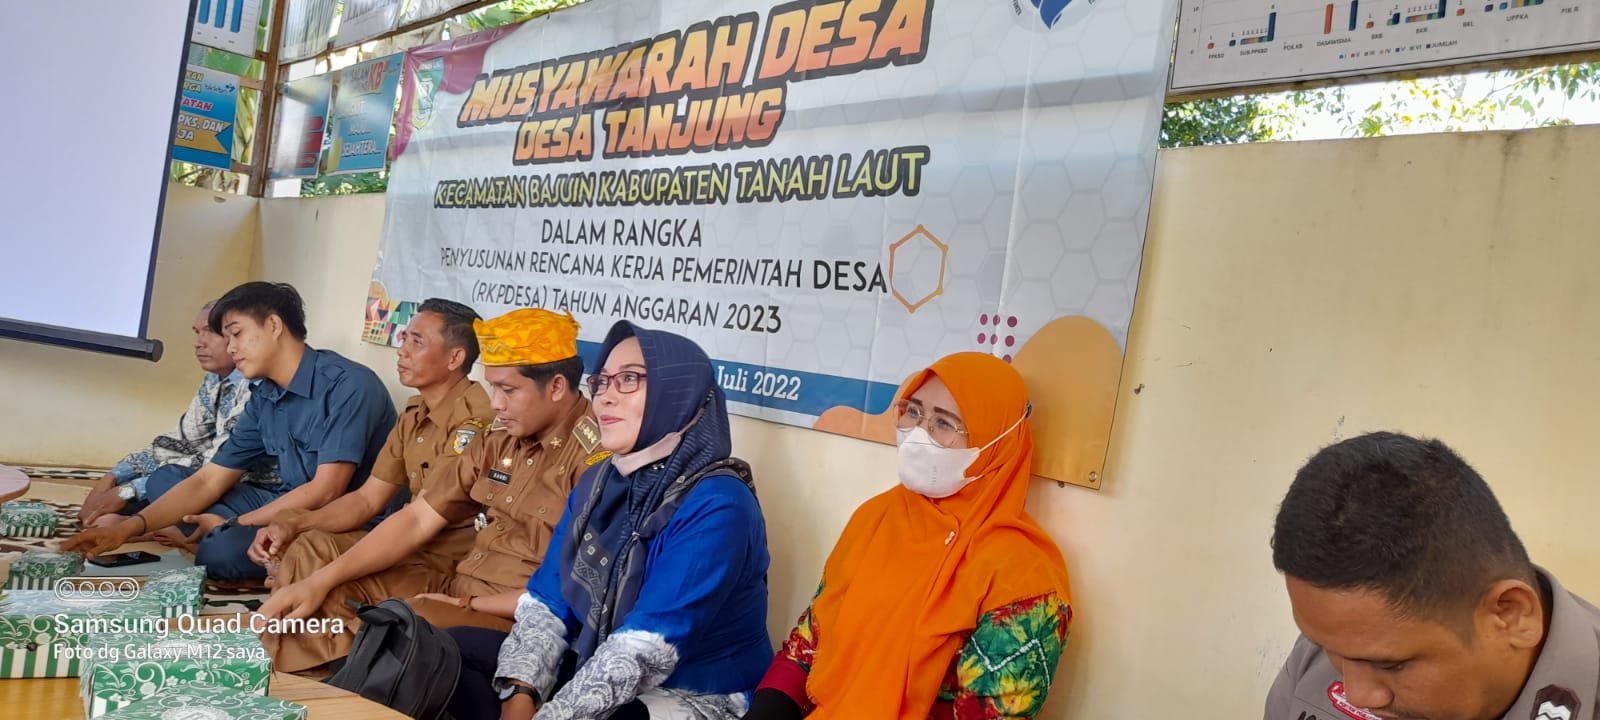 Musyawarah Desa Penyusunan RKP Tingkat Desa Tahun 2023 Desa Tanjung Kecamatan Bajuin